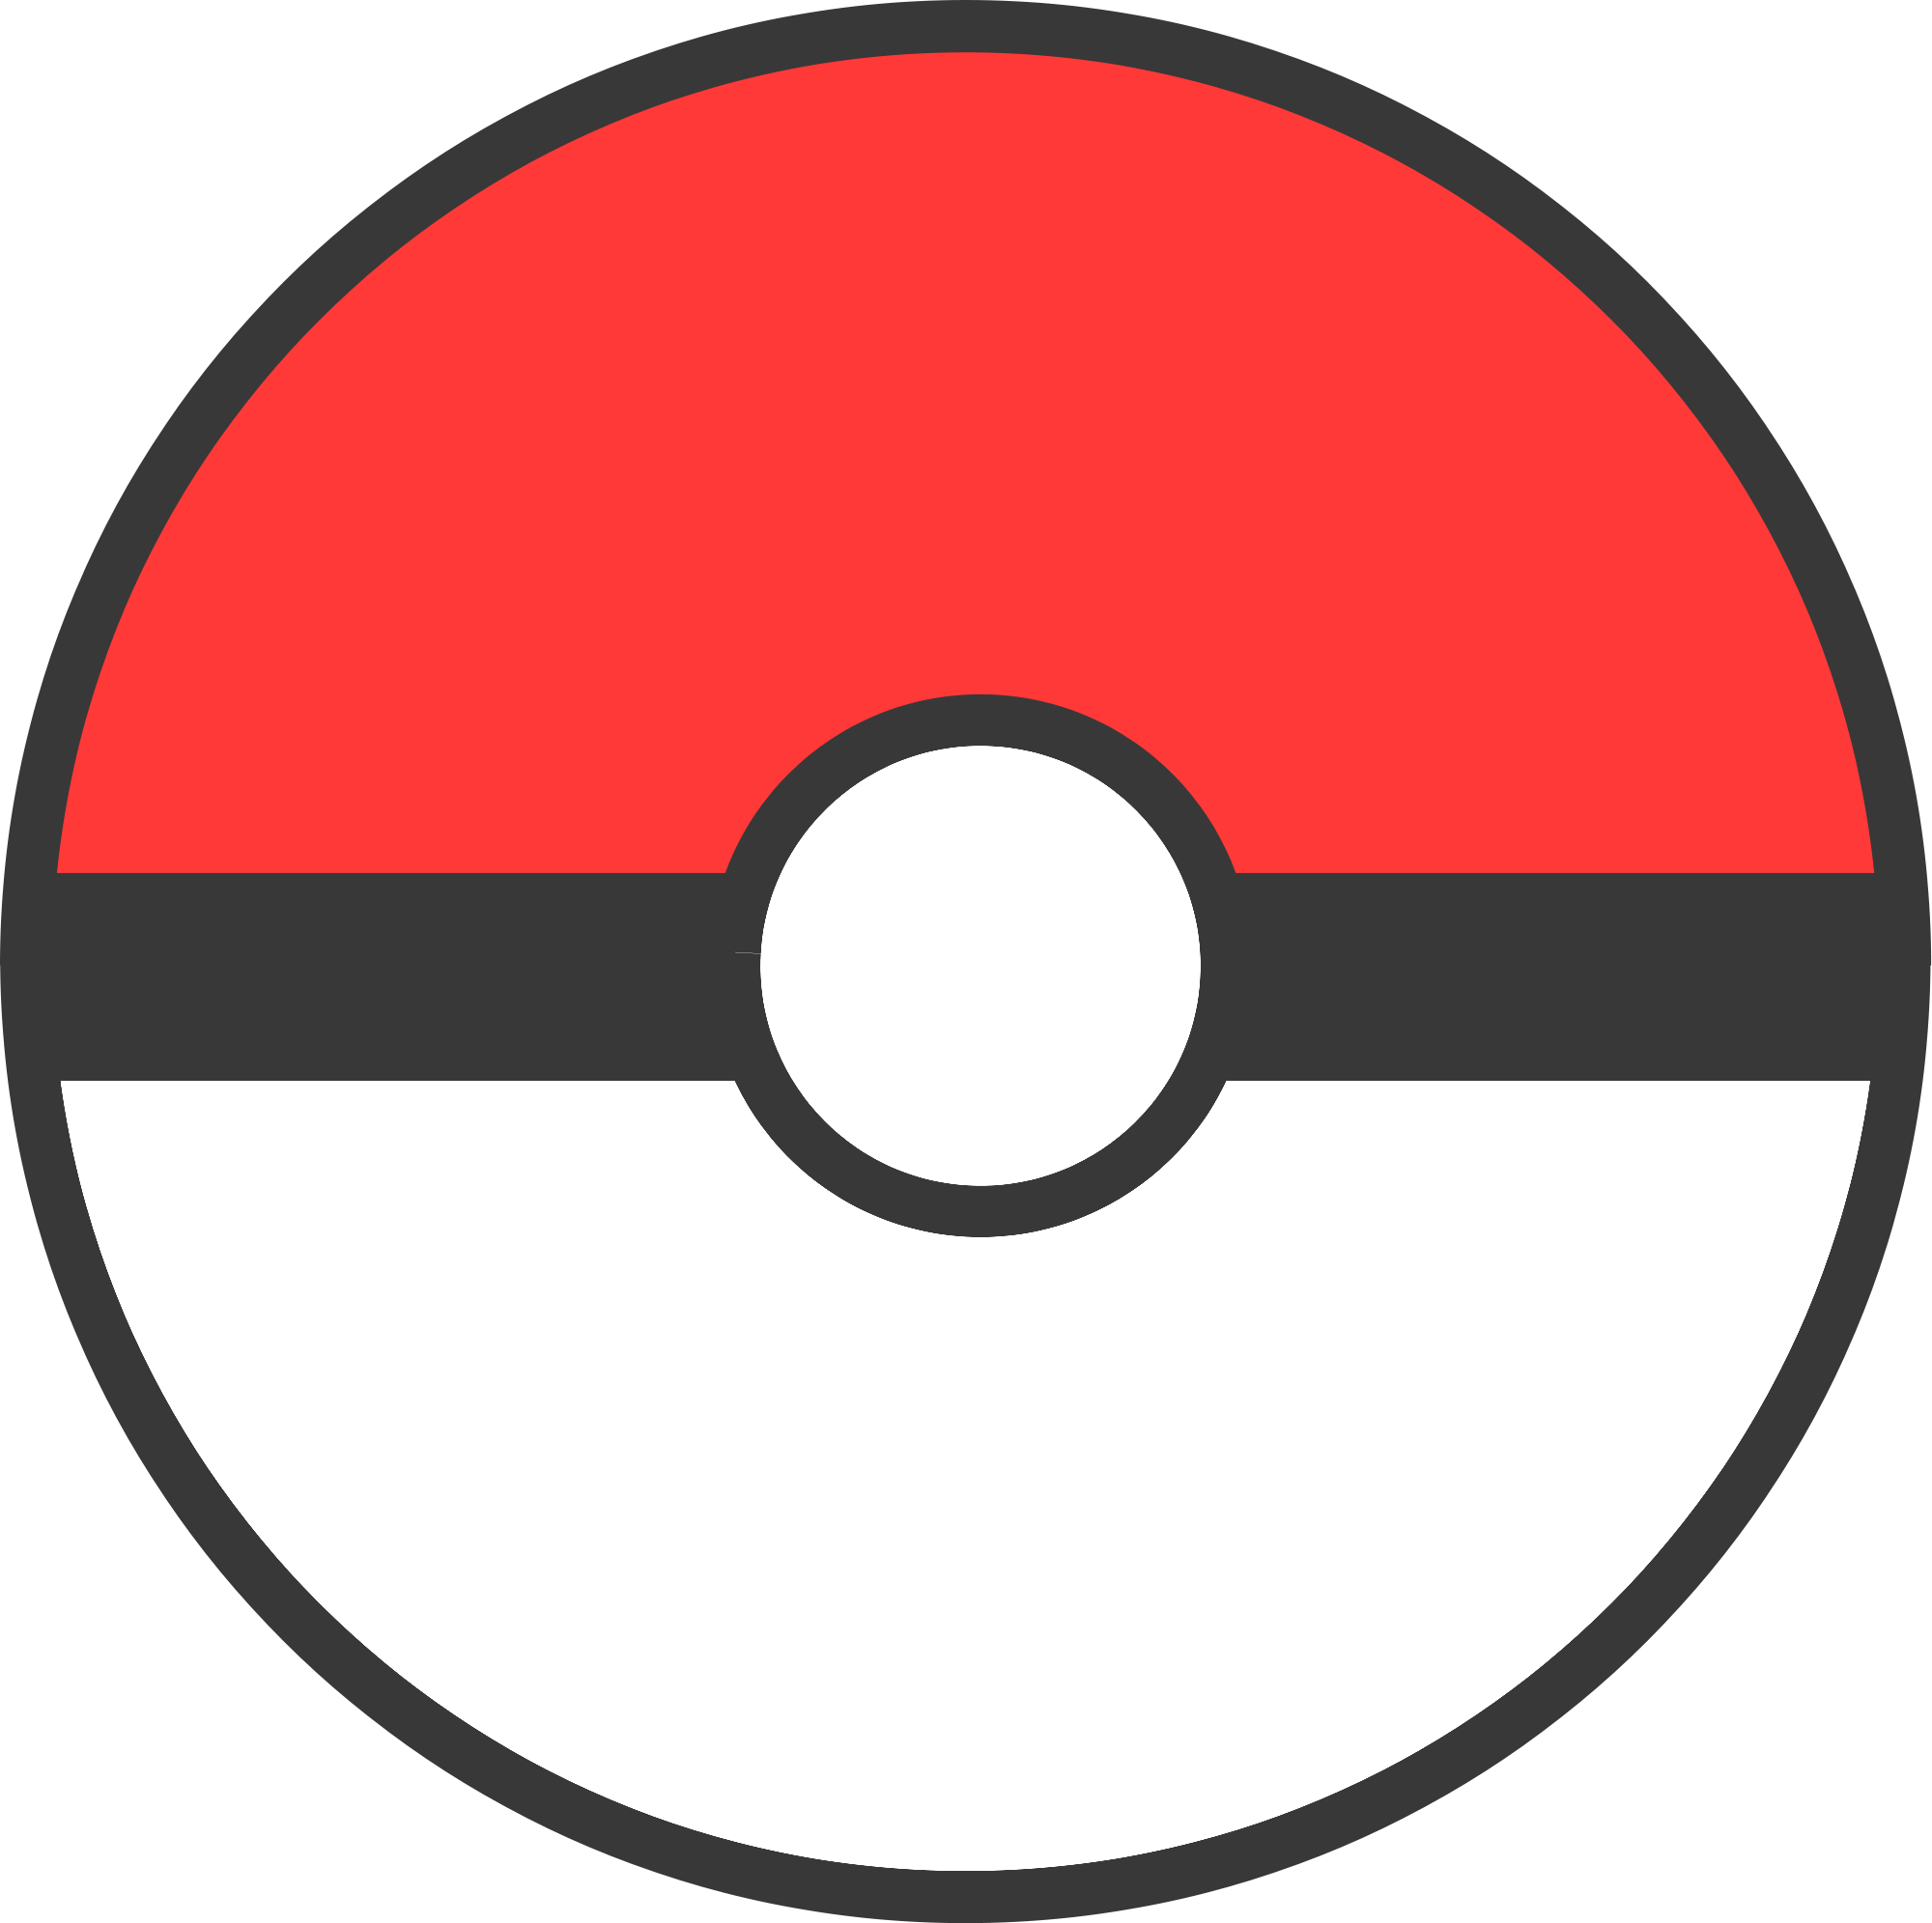 Properties - Pokemon Pokeball Opening Sprite - Free Transparent PNG  Download - PNGkey